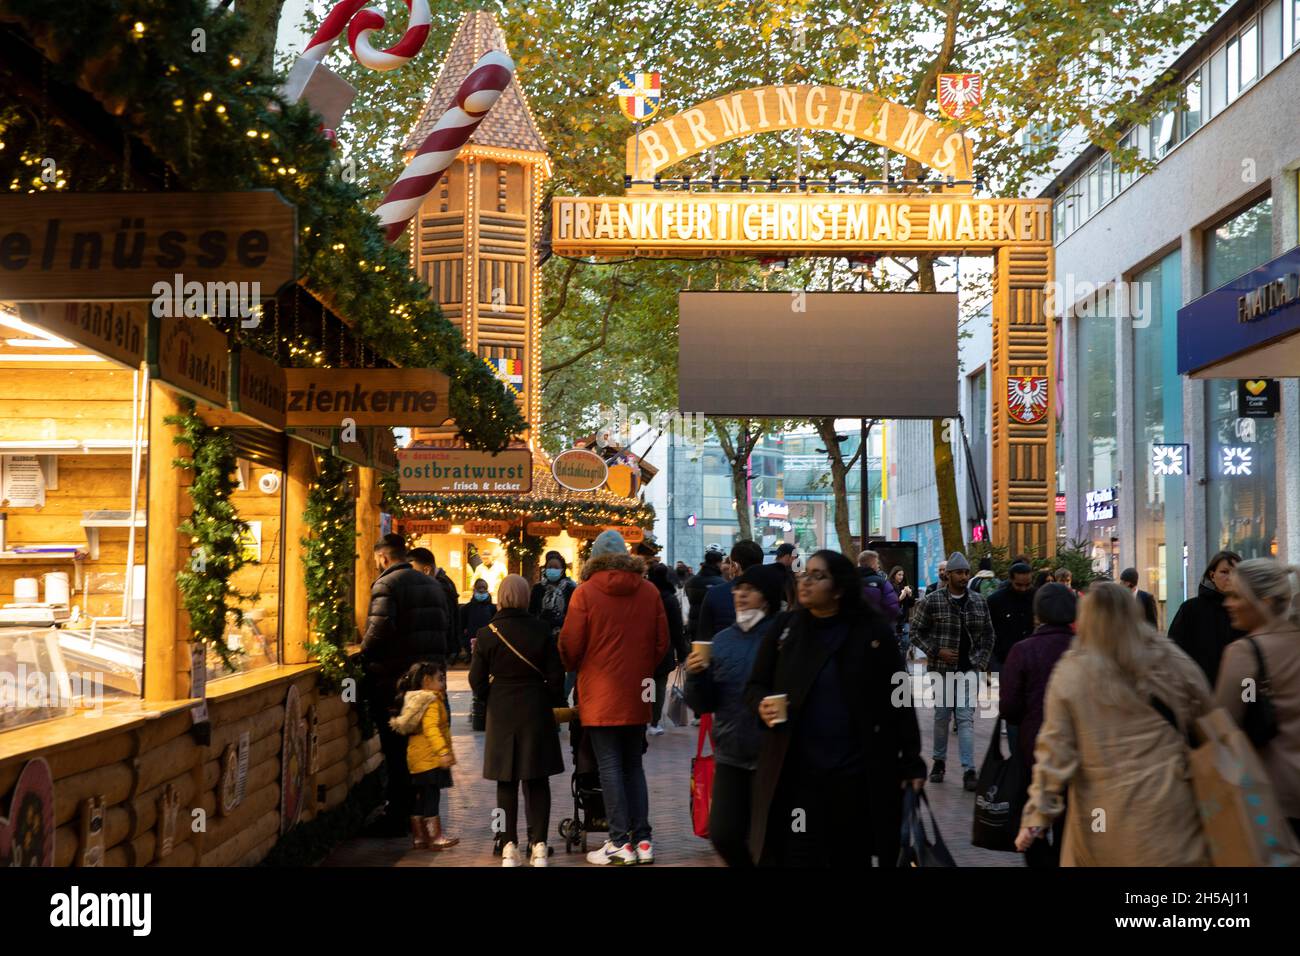 Le marché de Noël de Birmingham Francfort 2021.L'événement a été annulé en 2020 en raison des restrictions de Covid. Banque D'Images